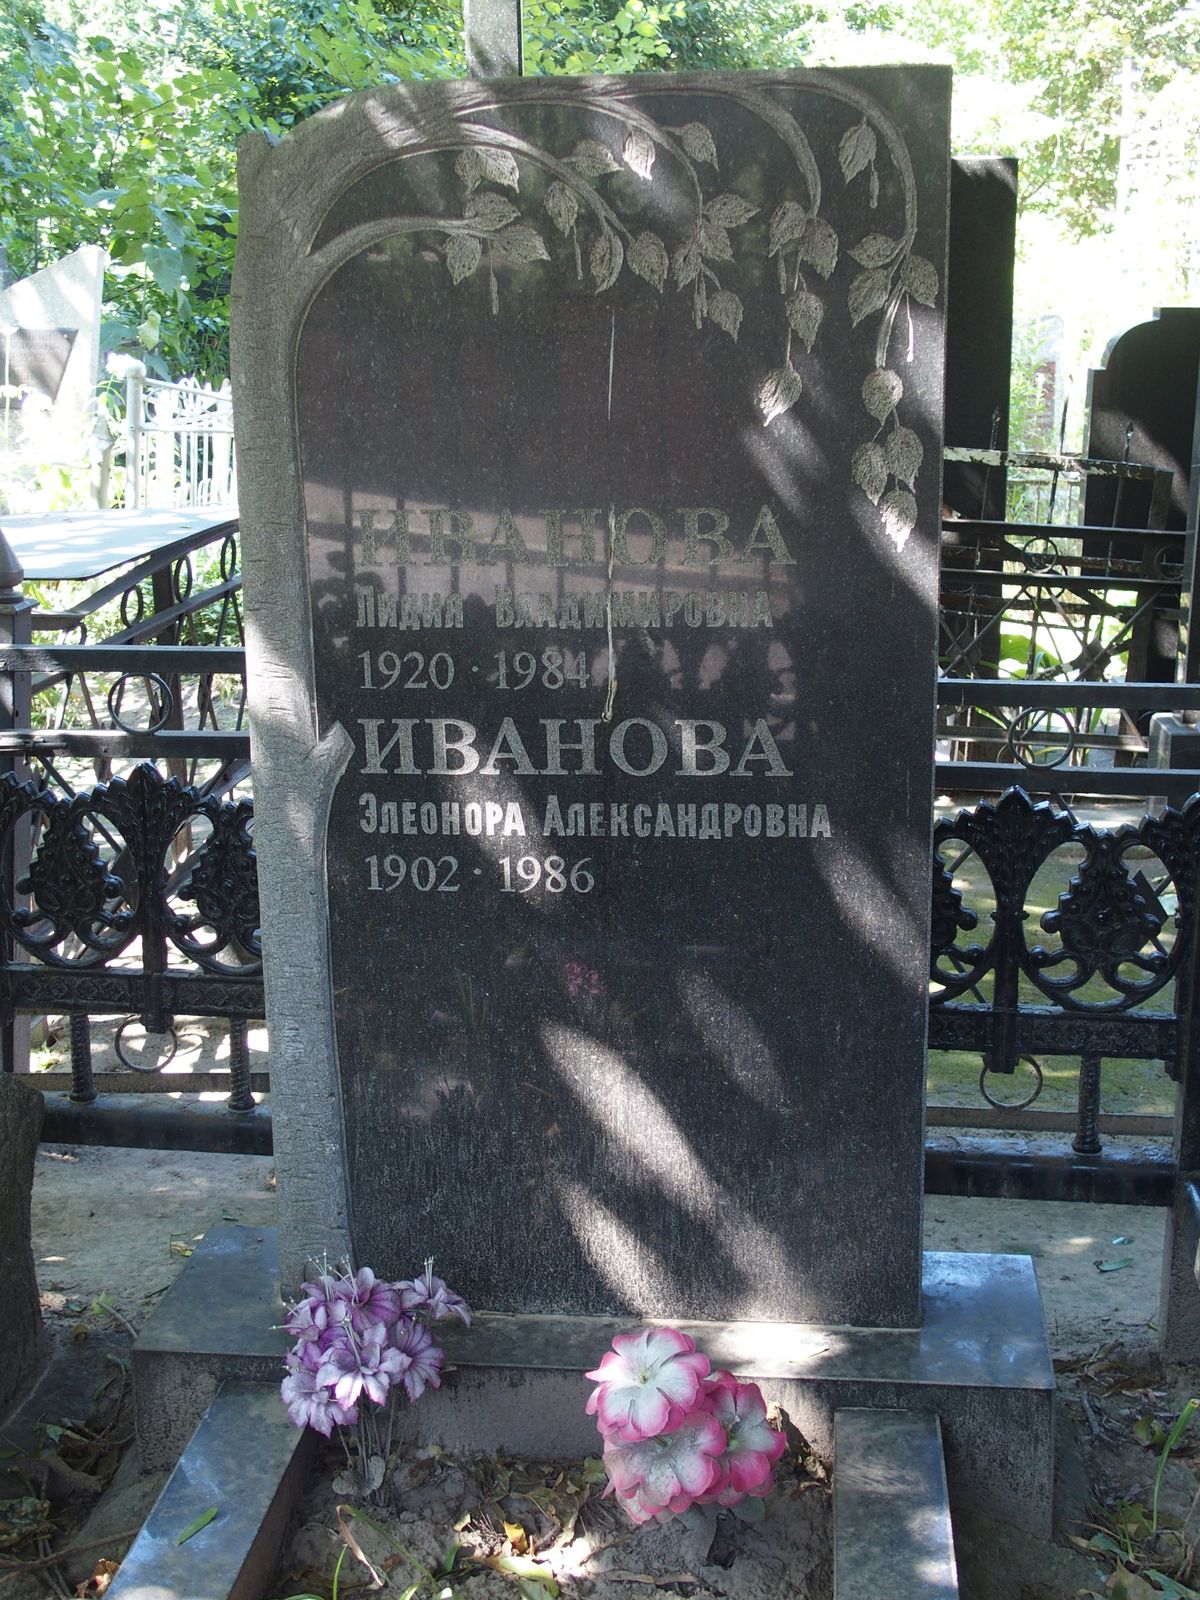 Napis z nagrobka Lidii Vladimirovny Ivanovej, Ěleonory Aleksandrovny Ivanovej